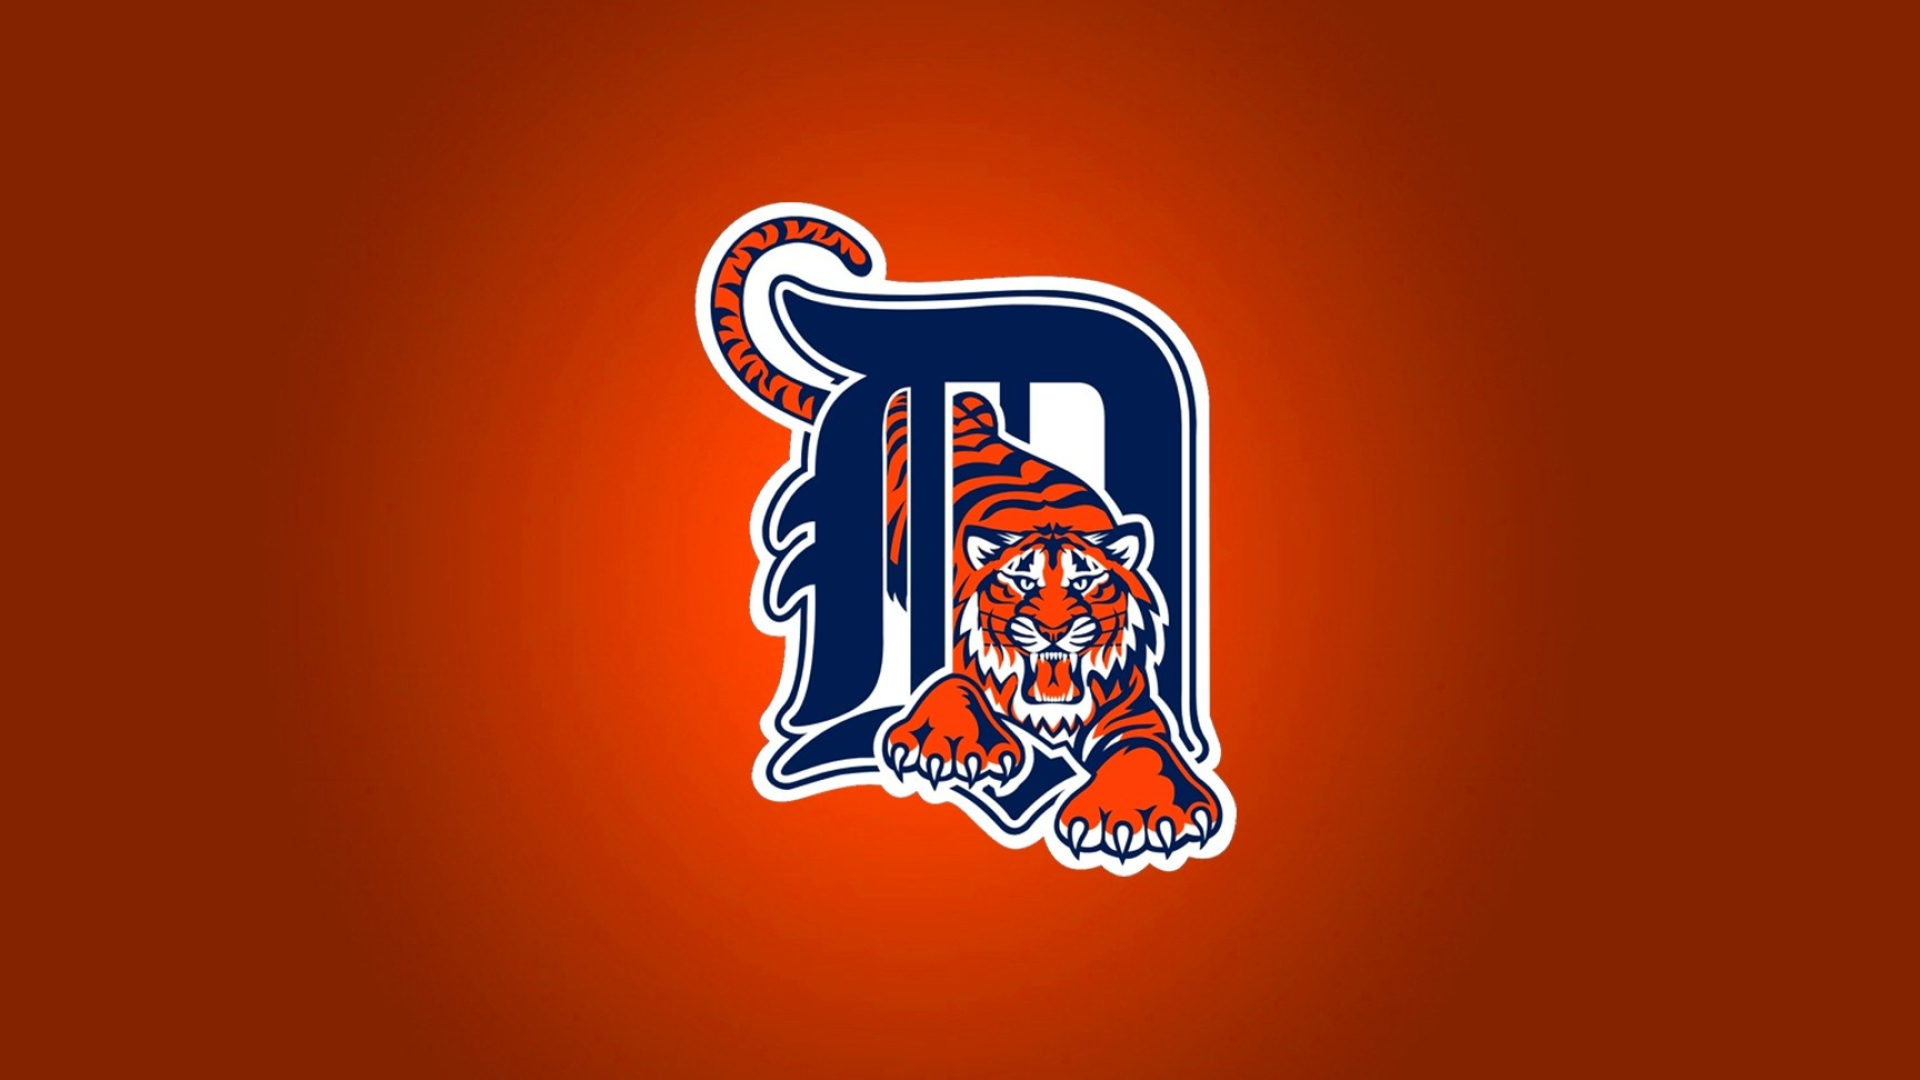 Detroit Tigers, Sports, team logo, 1920x1080 Full HD Desktop